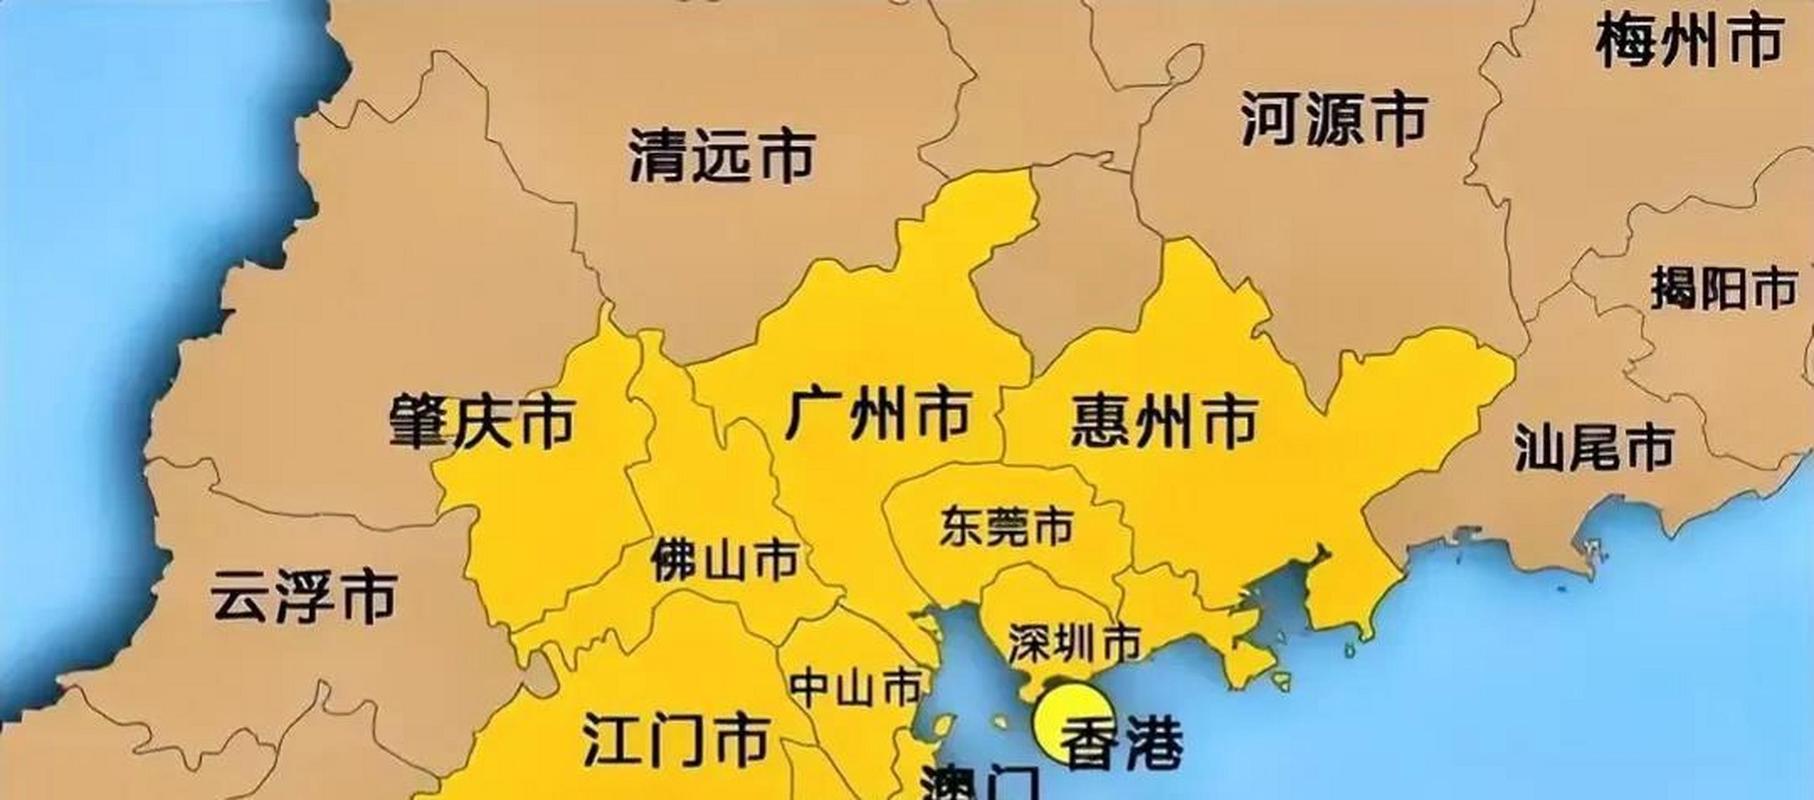 惠州是什么省份的